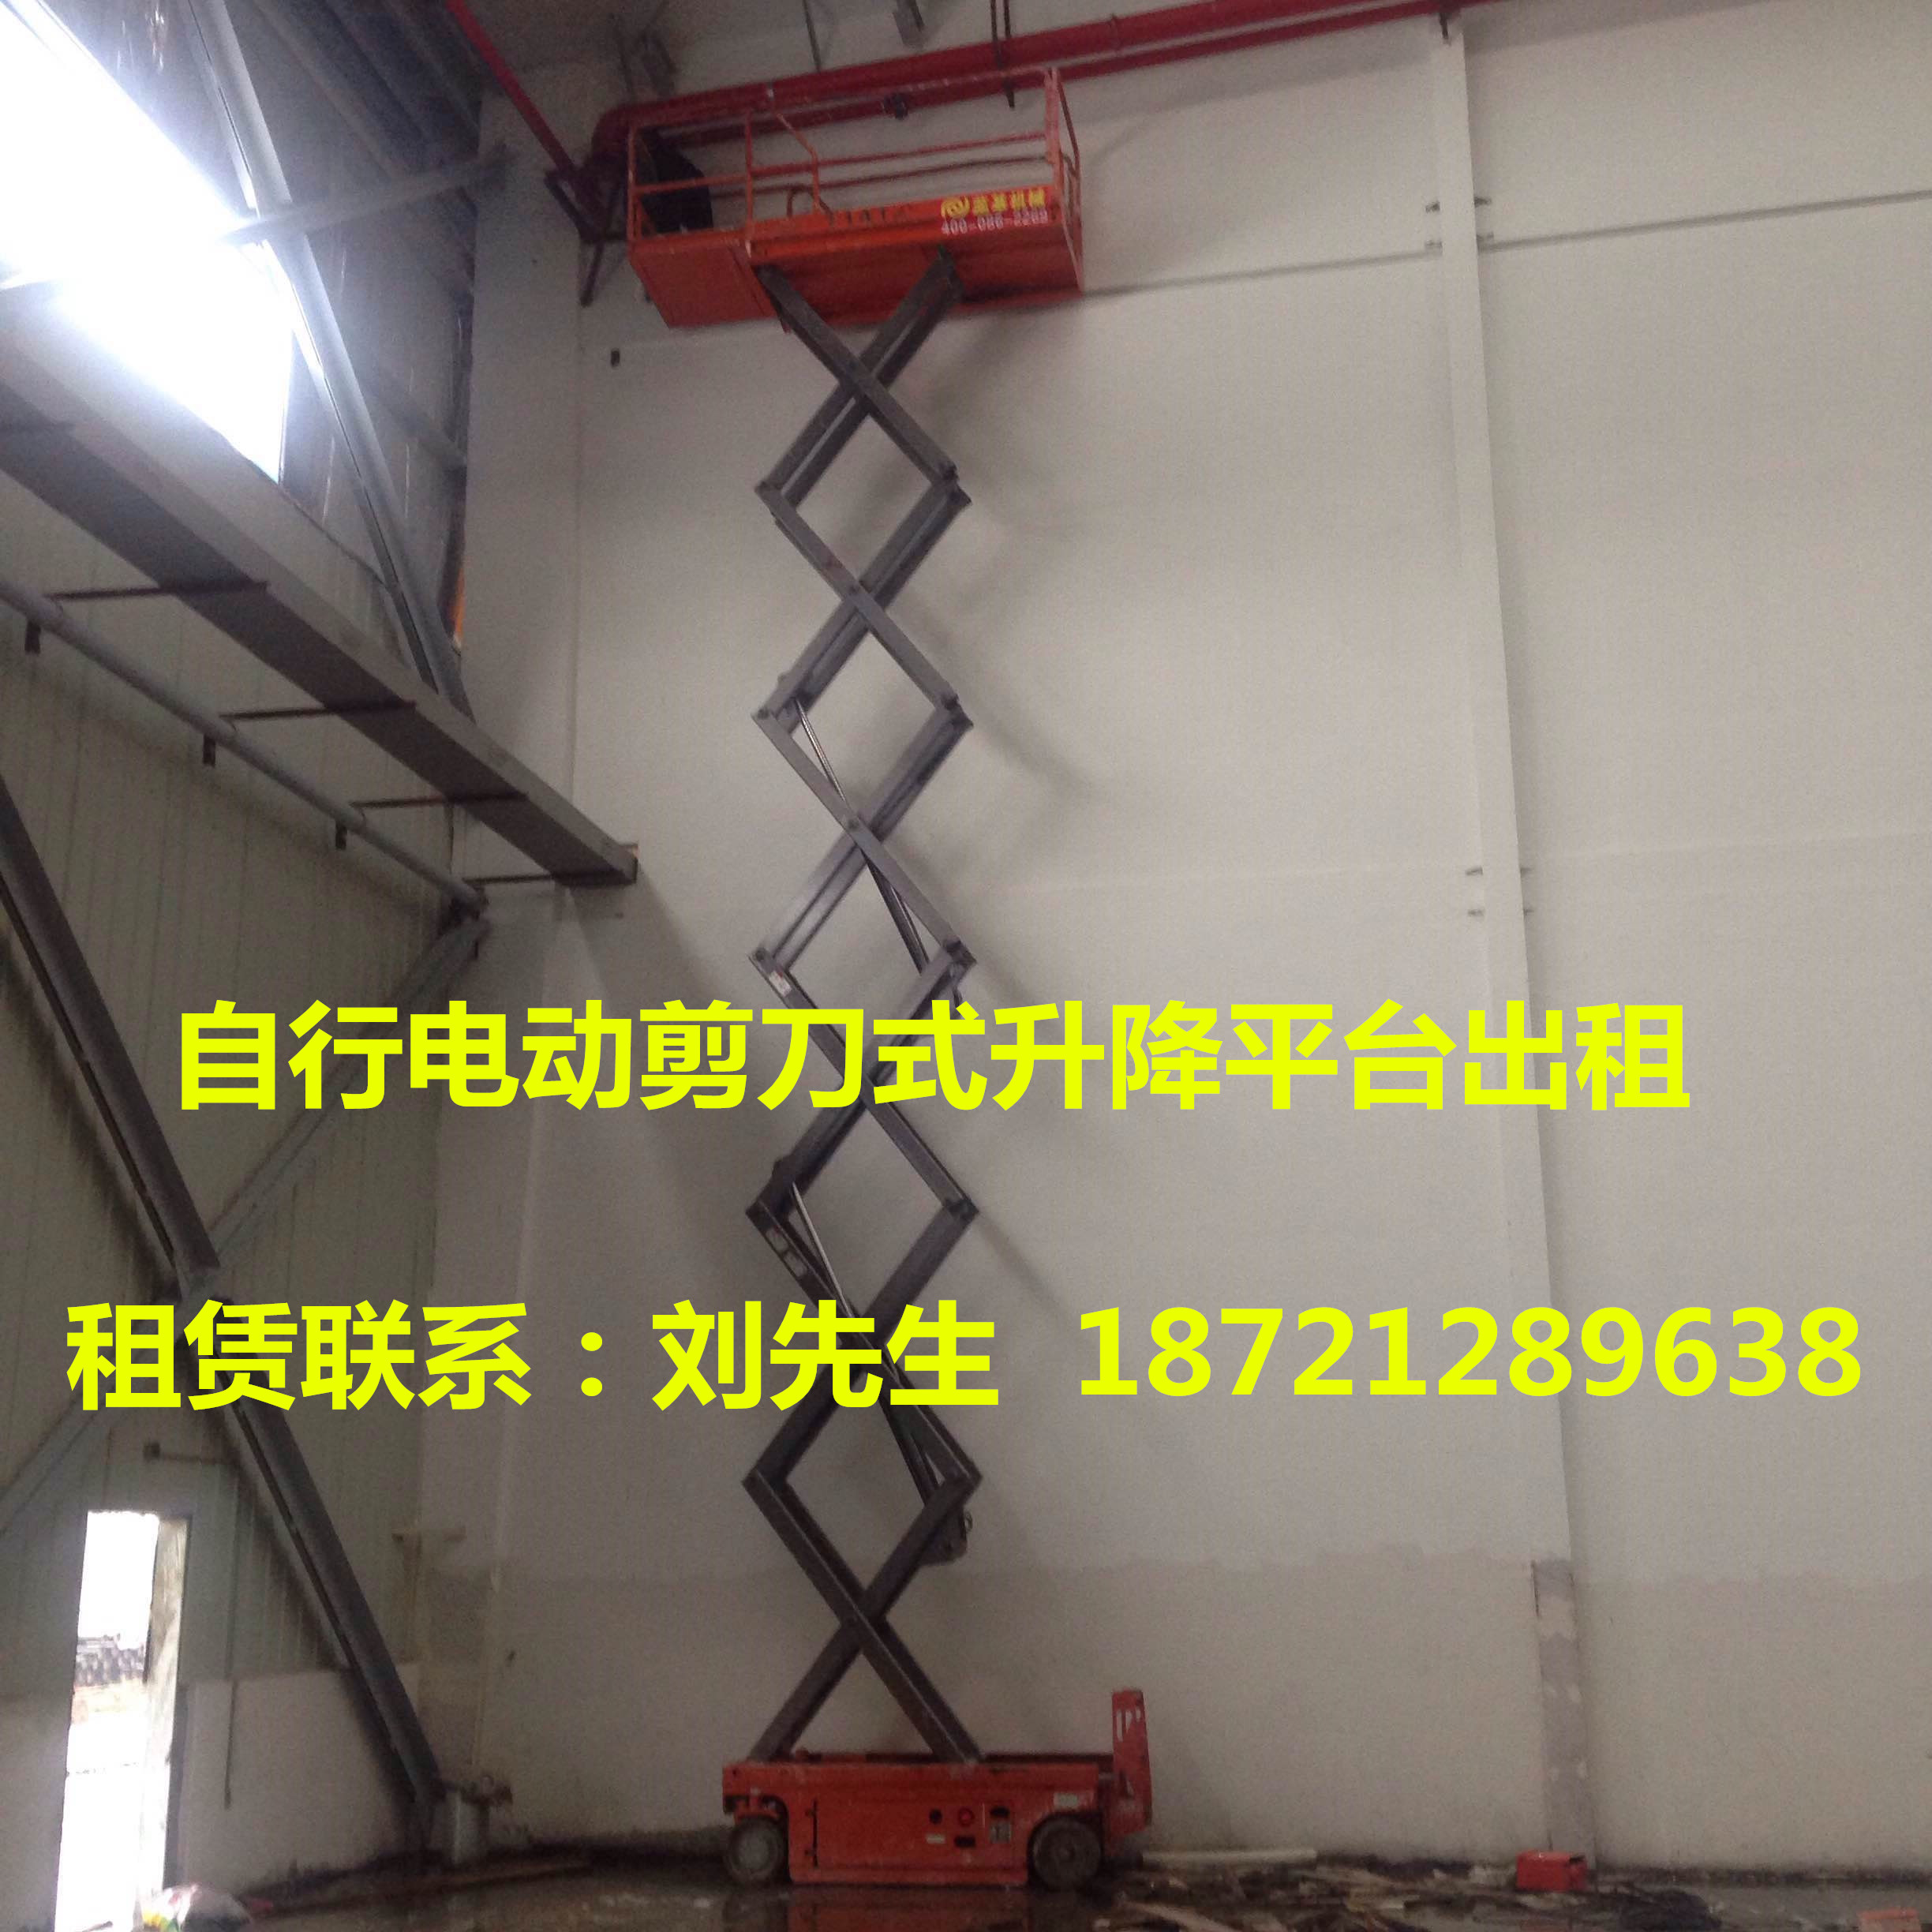 上海市10米平台高度自行剪刀式升降平台厂家上海供应10米平台高度自行剪刀式升降平台|价格优惠